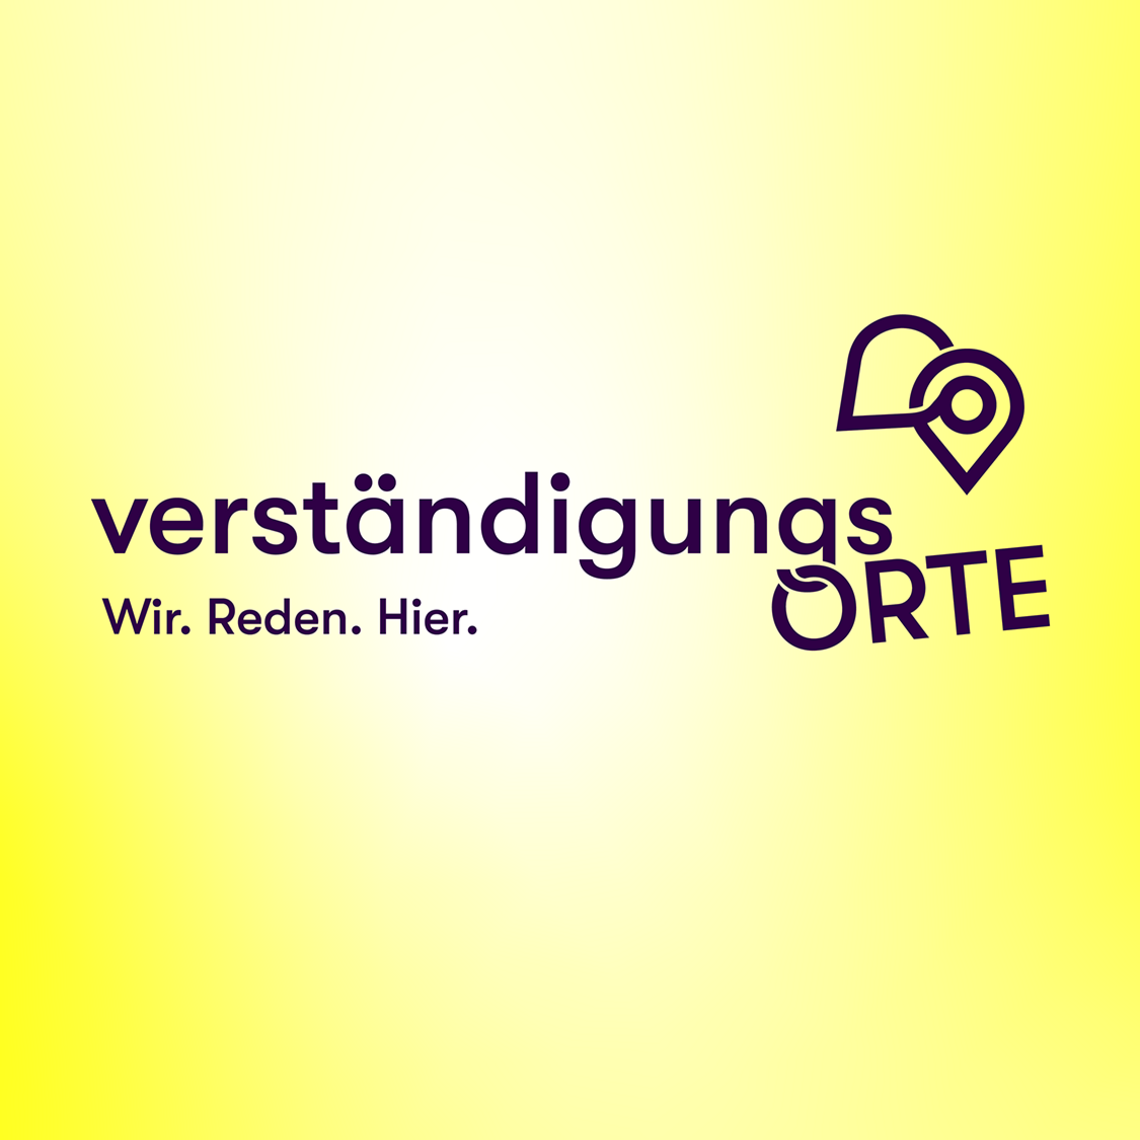 Logo der Initiative VerständigungsOrte